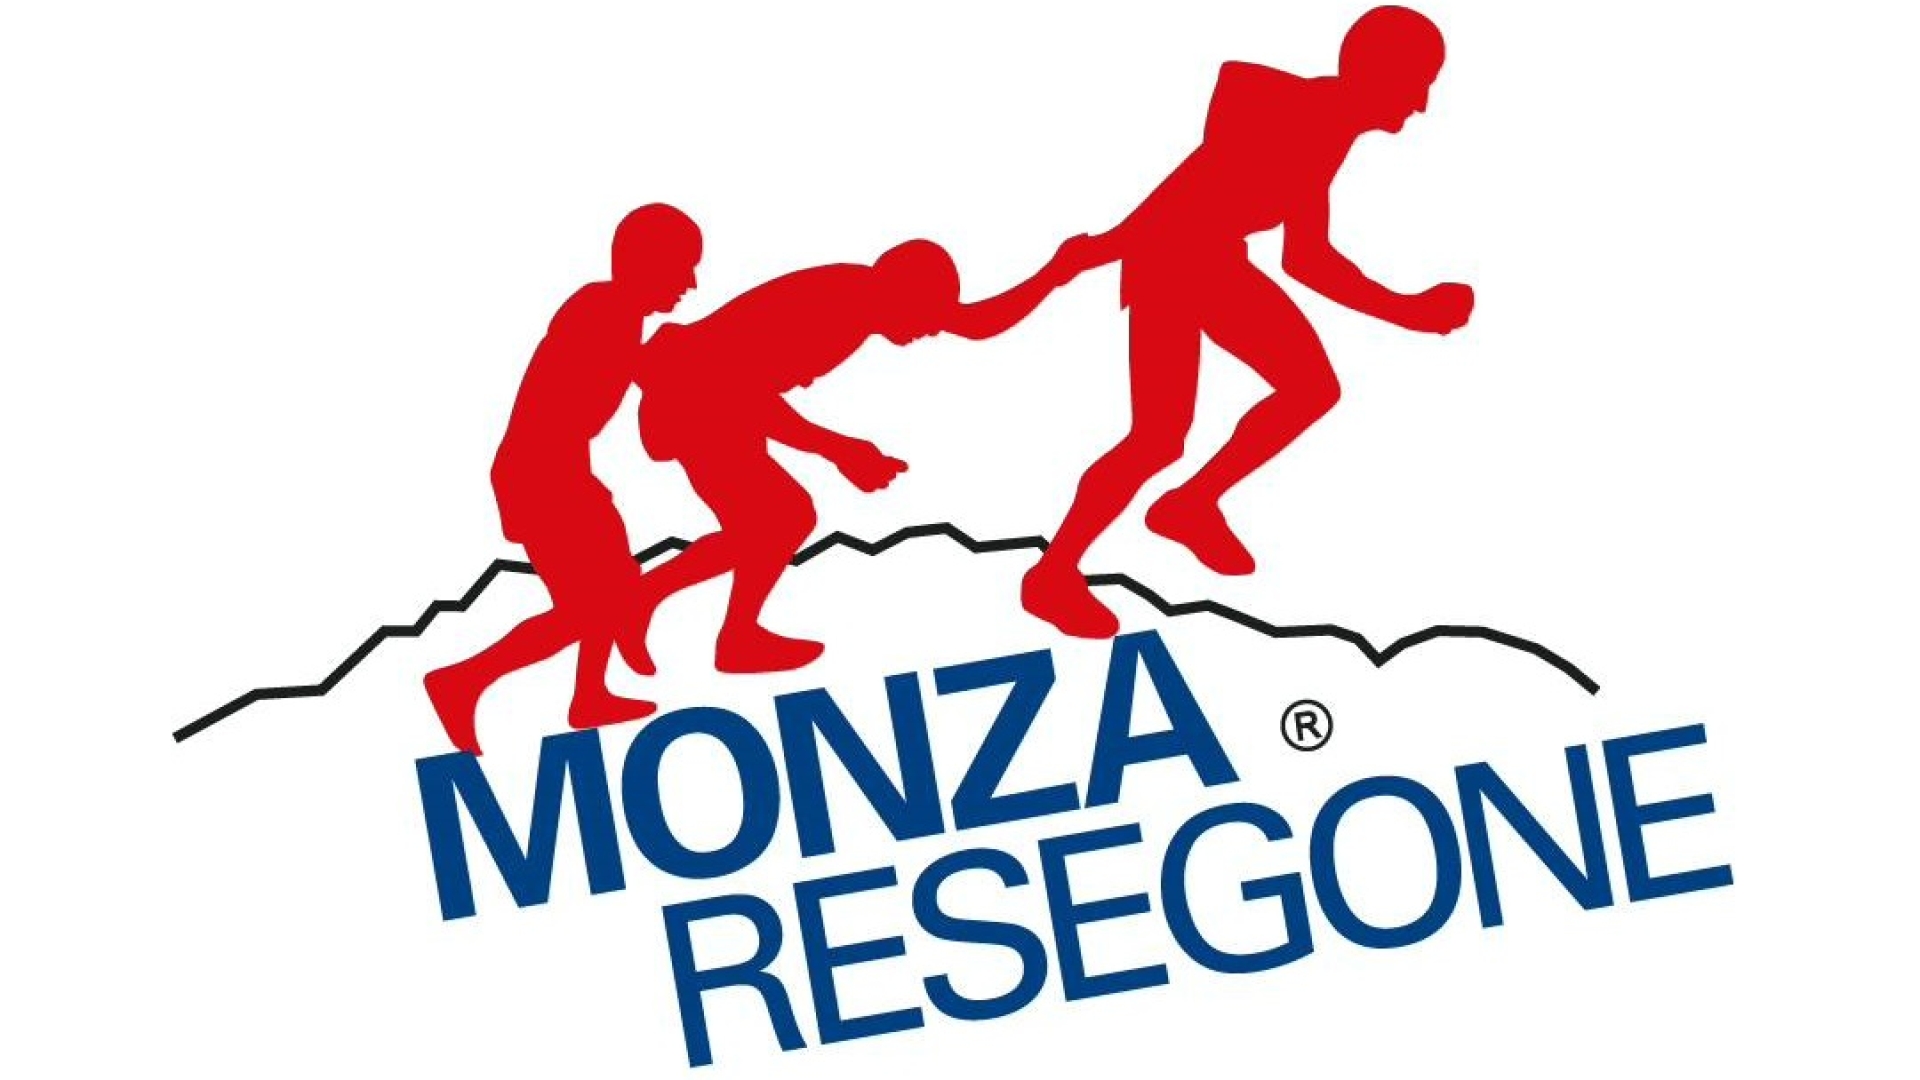 Monza Resegone verso l'Edizione del Centenario